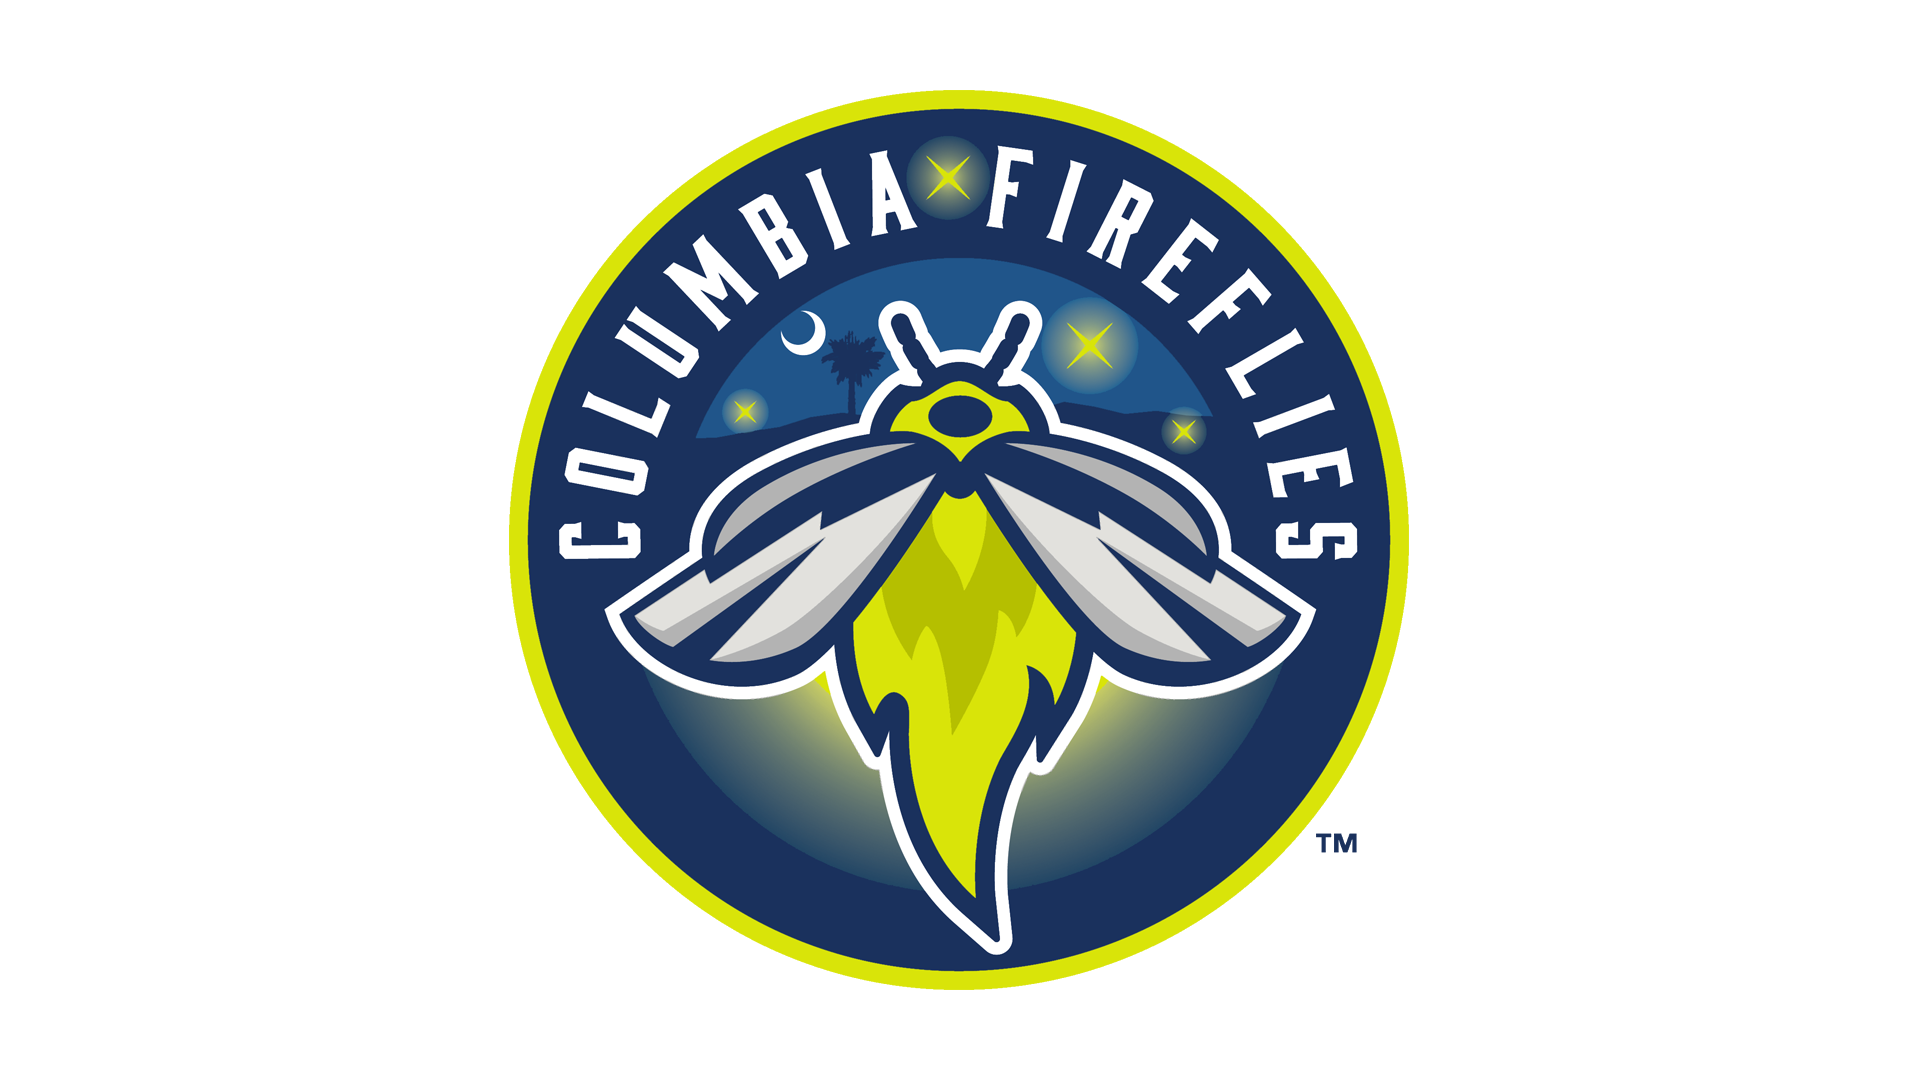 Columbia Fireflies